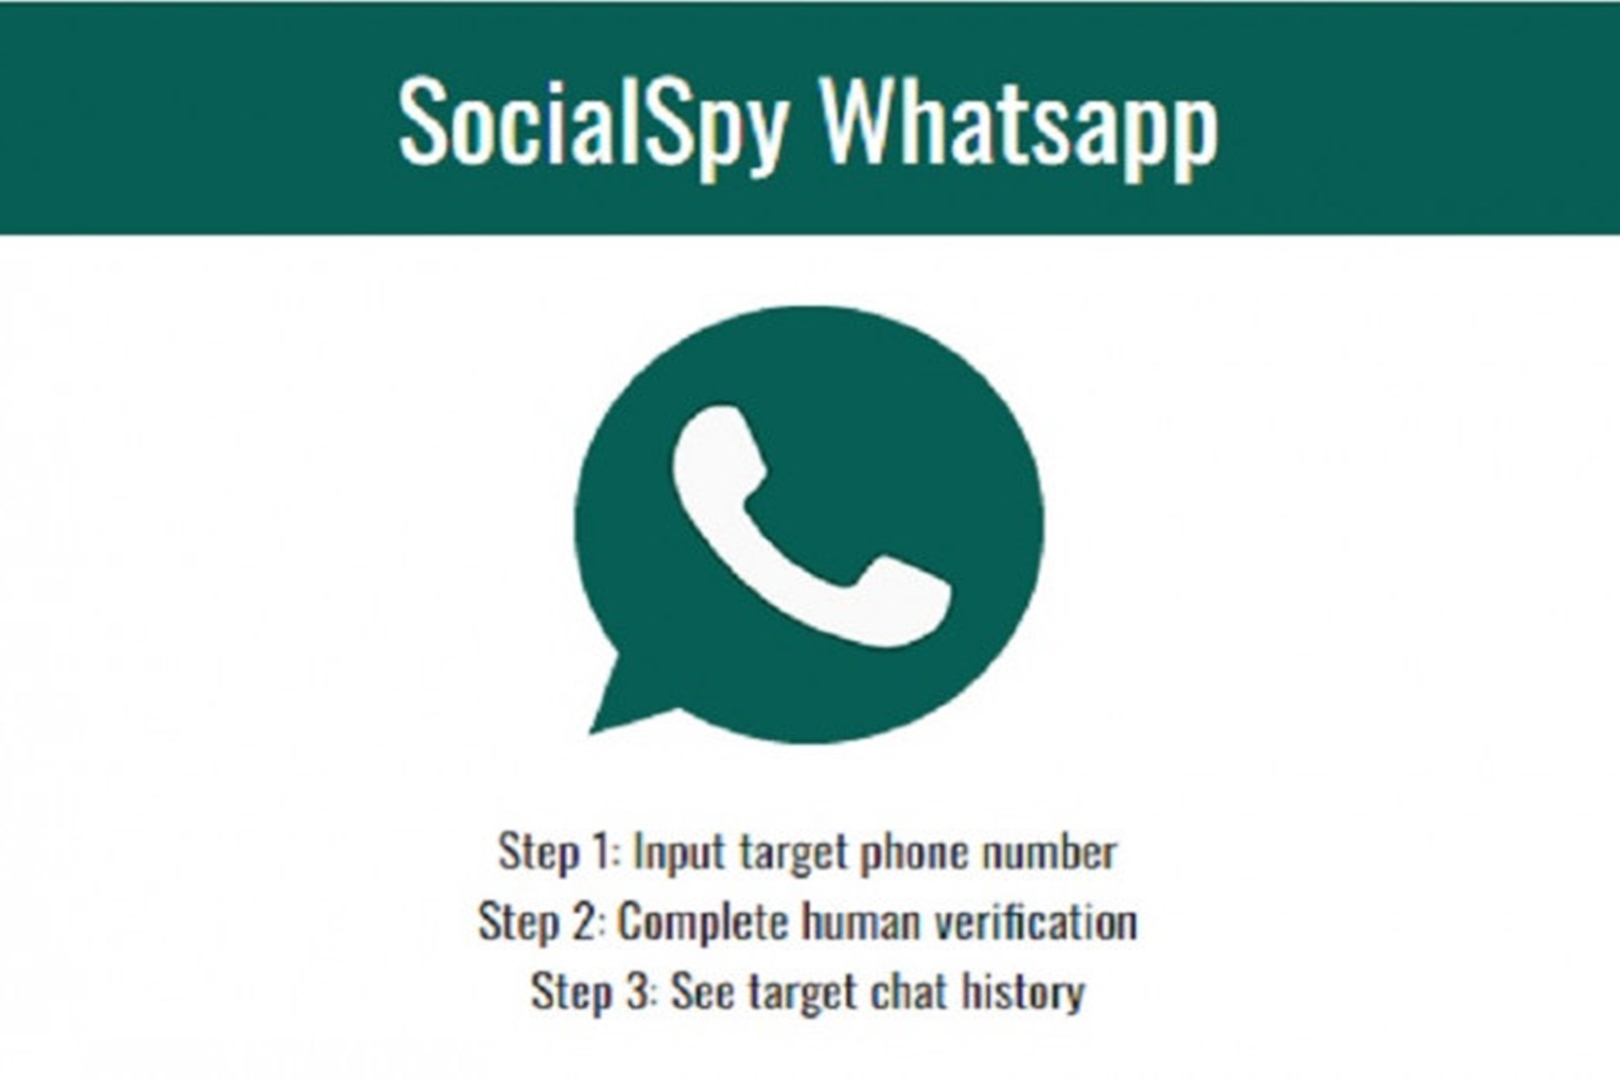 Intip Isi WA Pacar dengan Mudah Pakai Social Spy WhatsApp, Bisa dari Jauh Tanpa Ketahuan